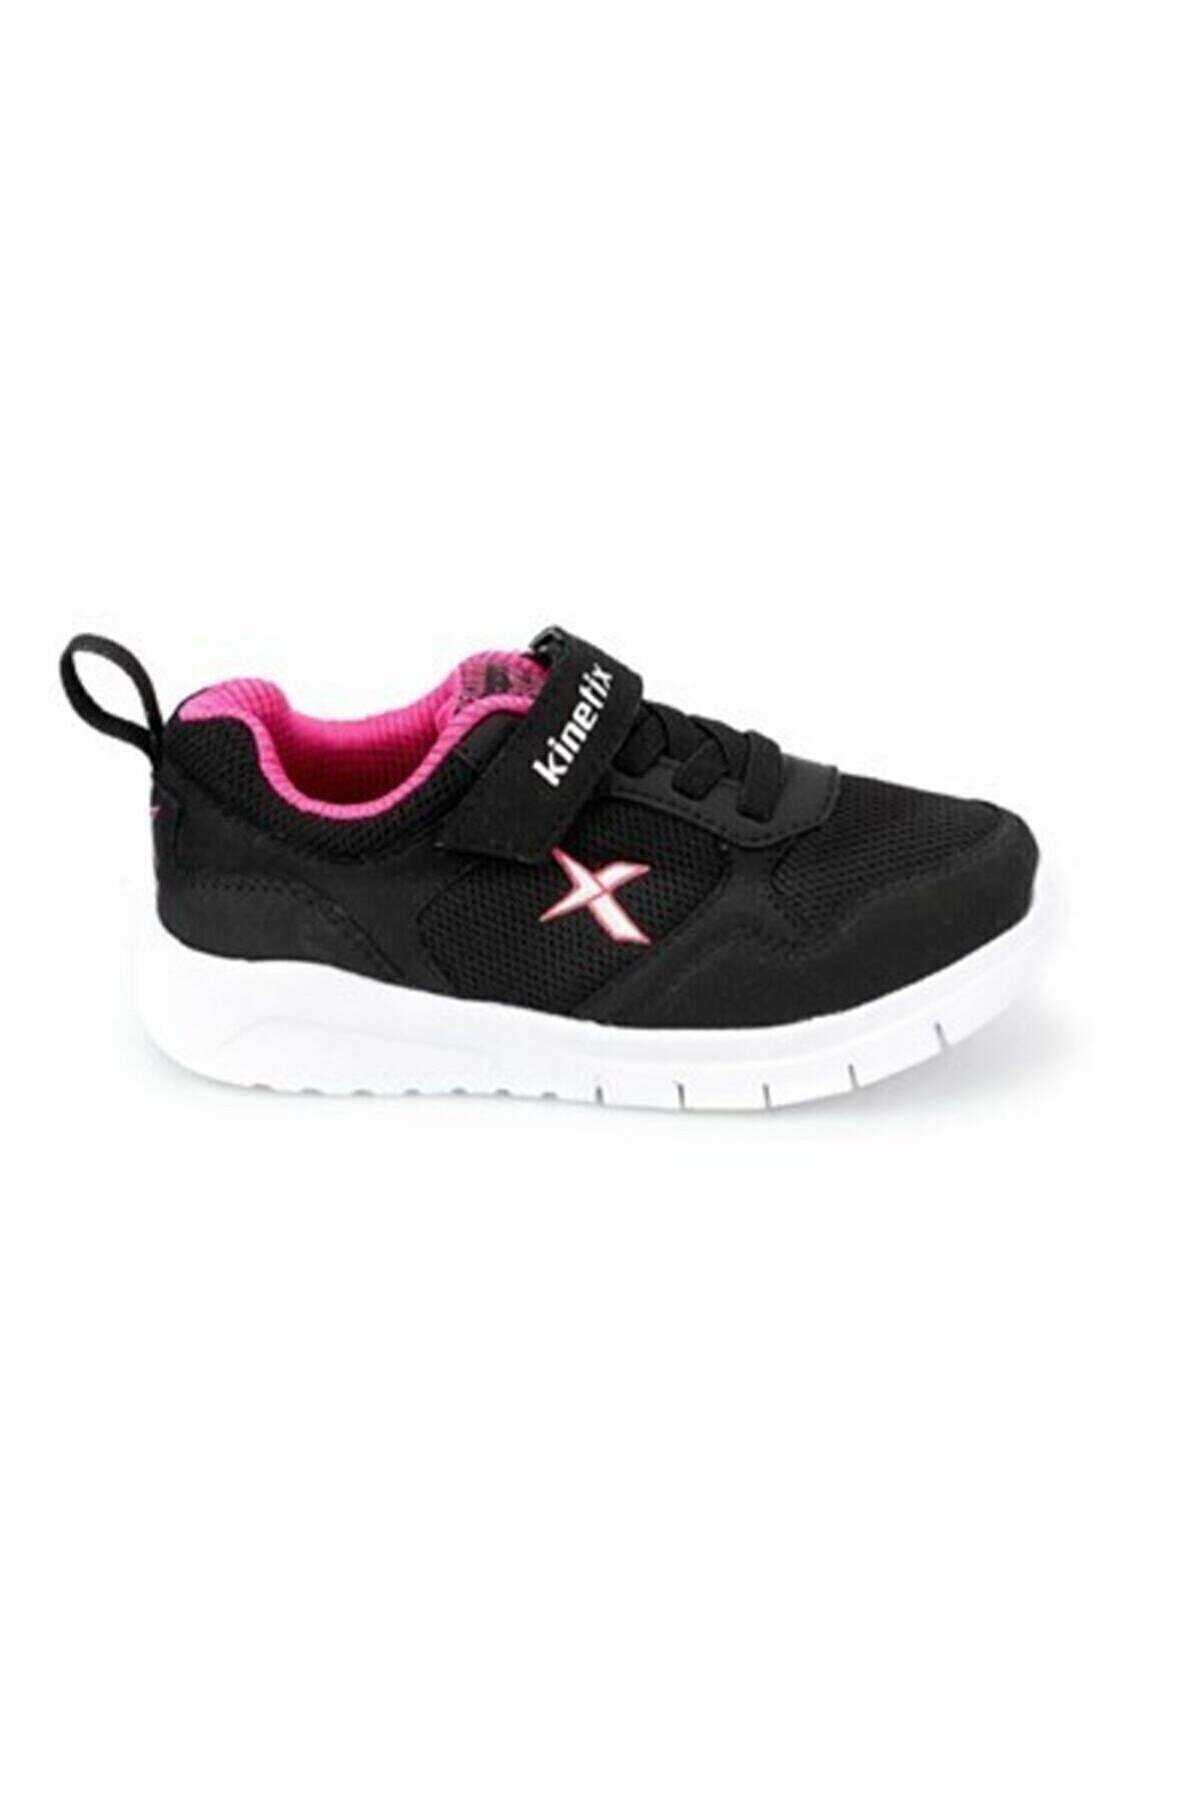 Kinetix 100356003 Rinto Kız Çocuk Spor Ayakkabı